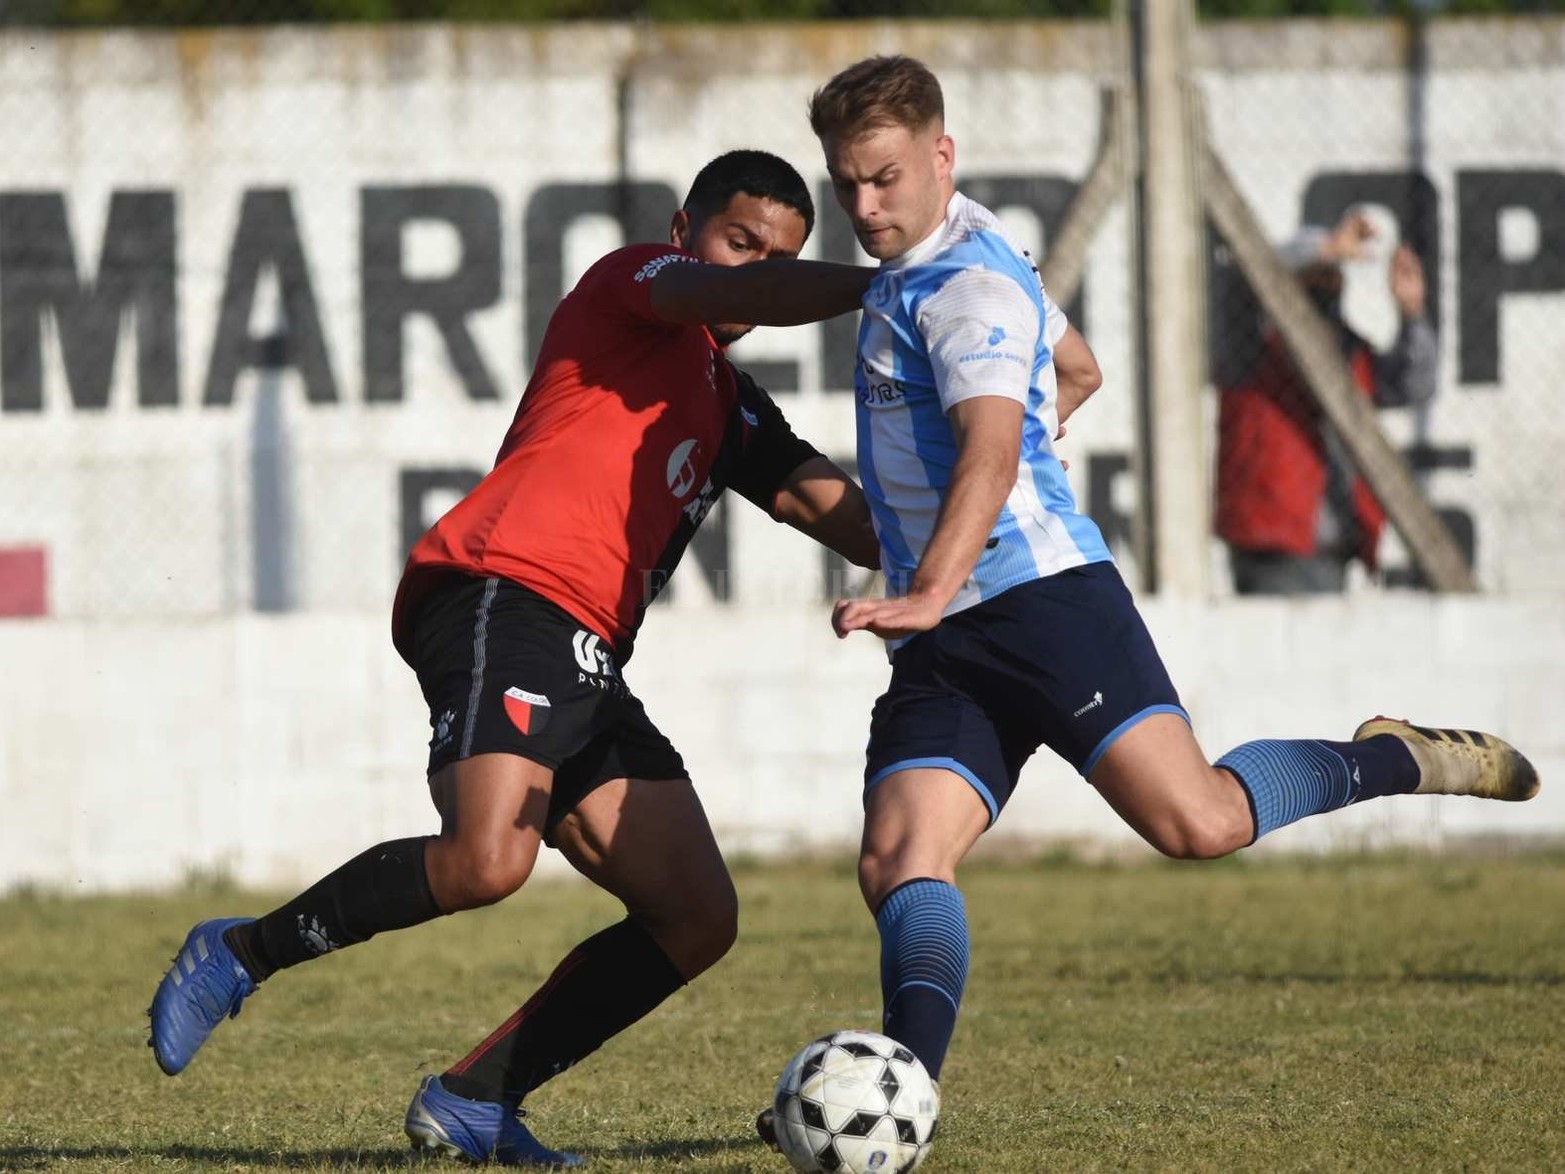 Colón y Argentino de San Carlos terminaron 1 a 1 el partido en la primera división de la liga santafesina.